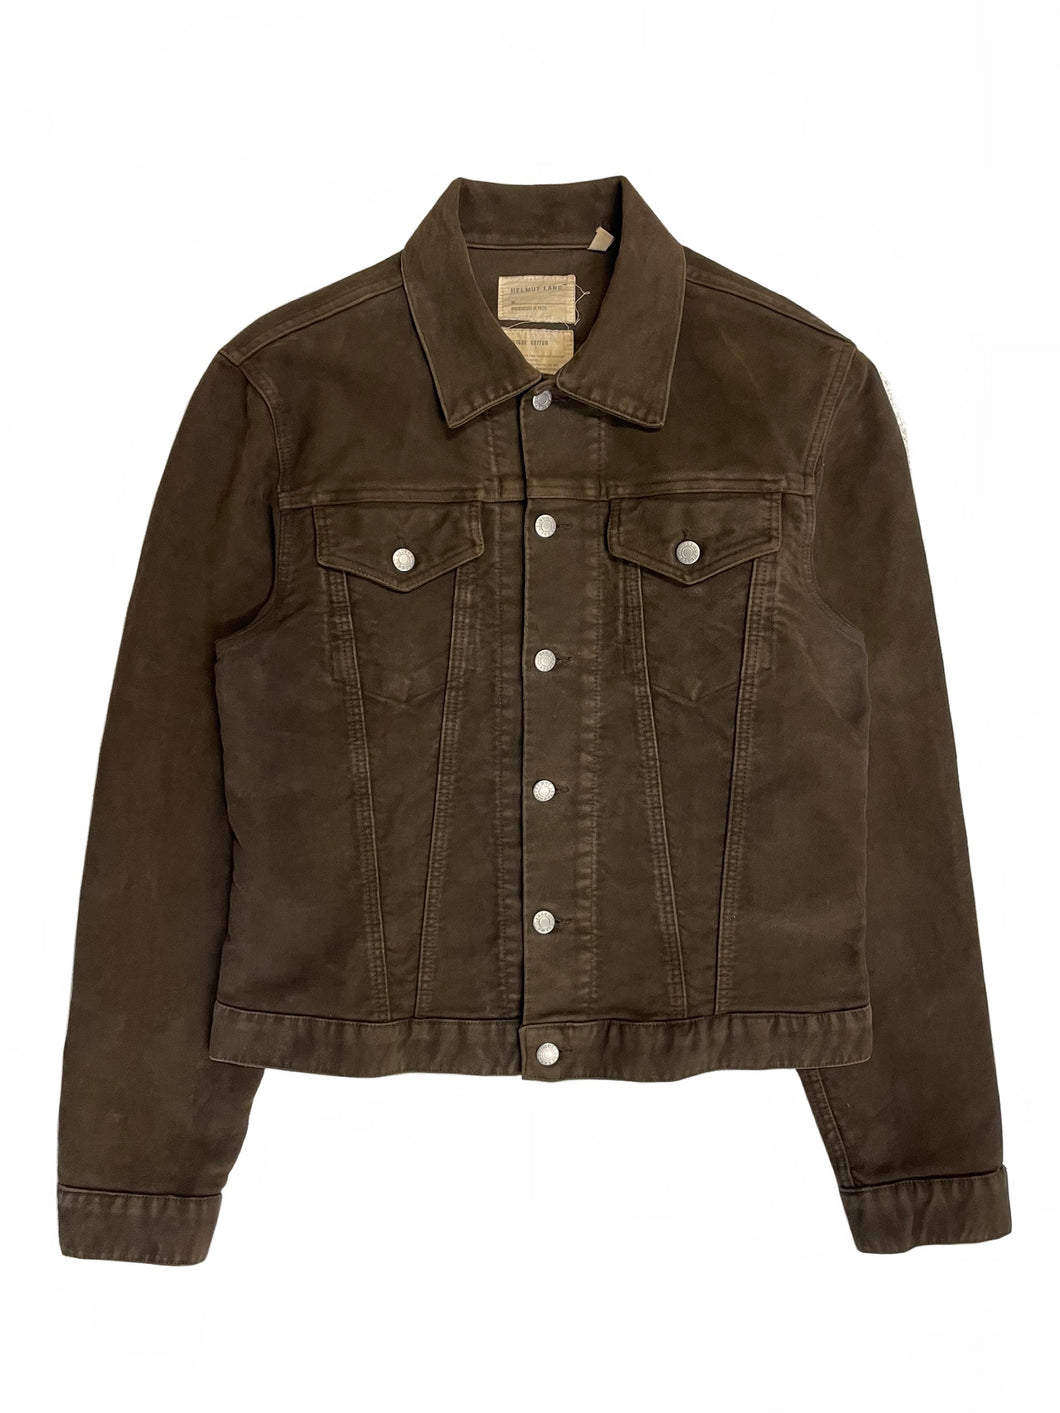 1990s Helmut Lang moleskin brown trucker jacket